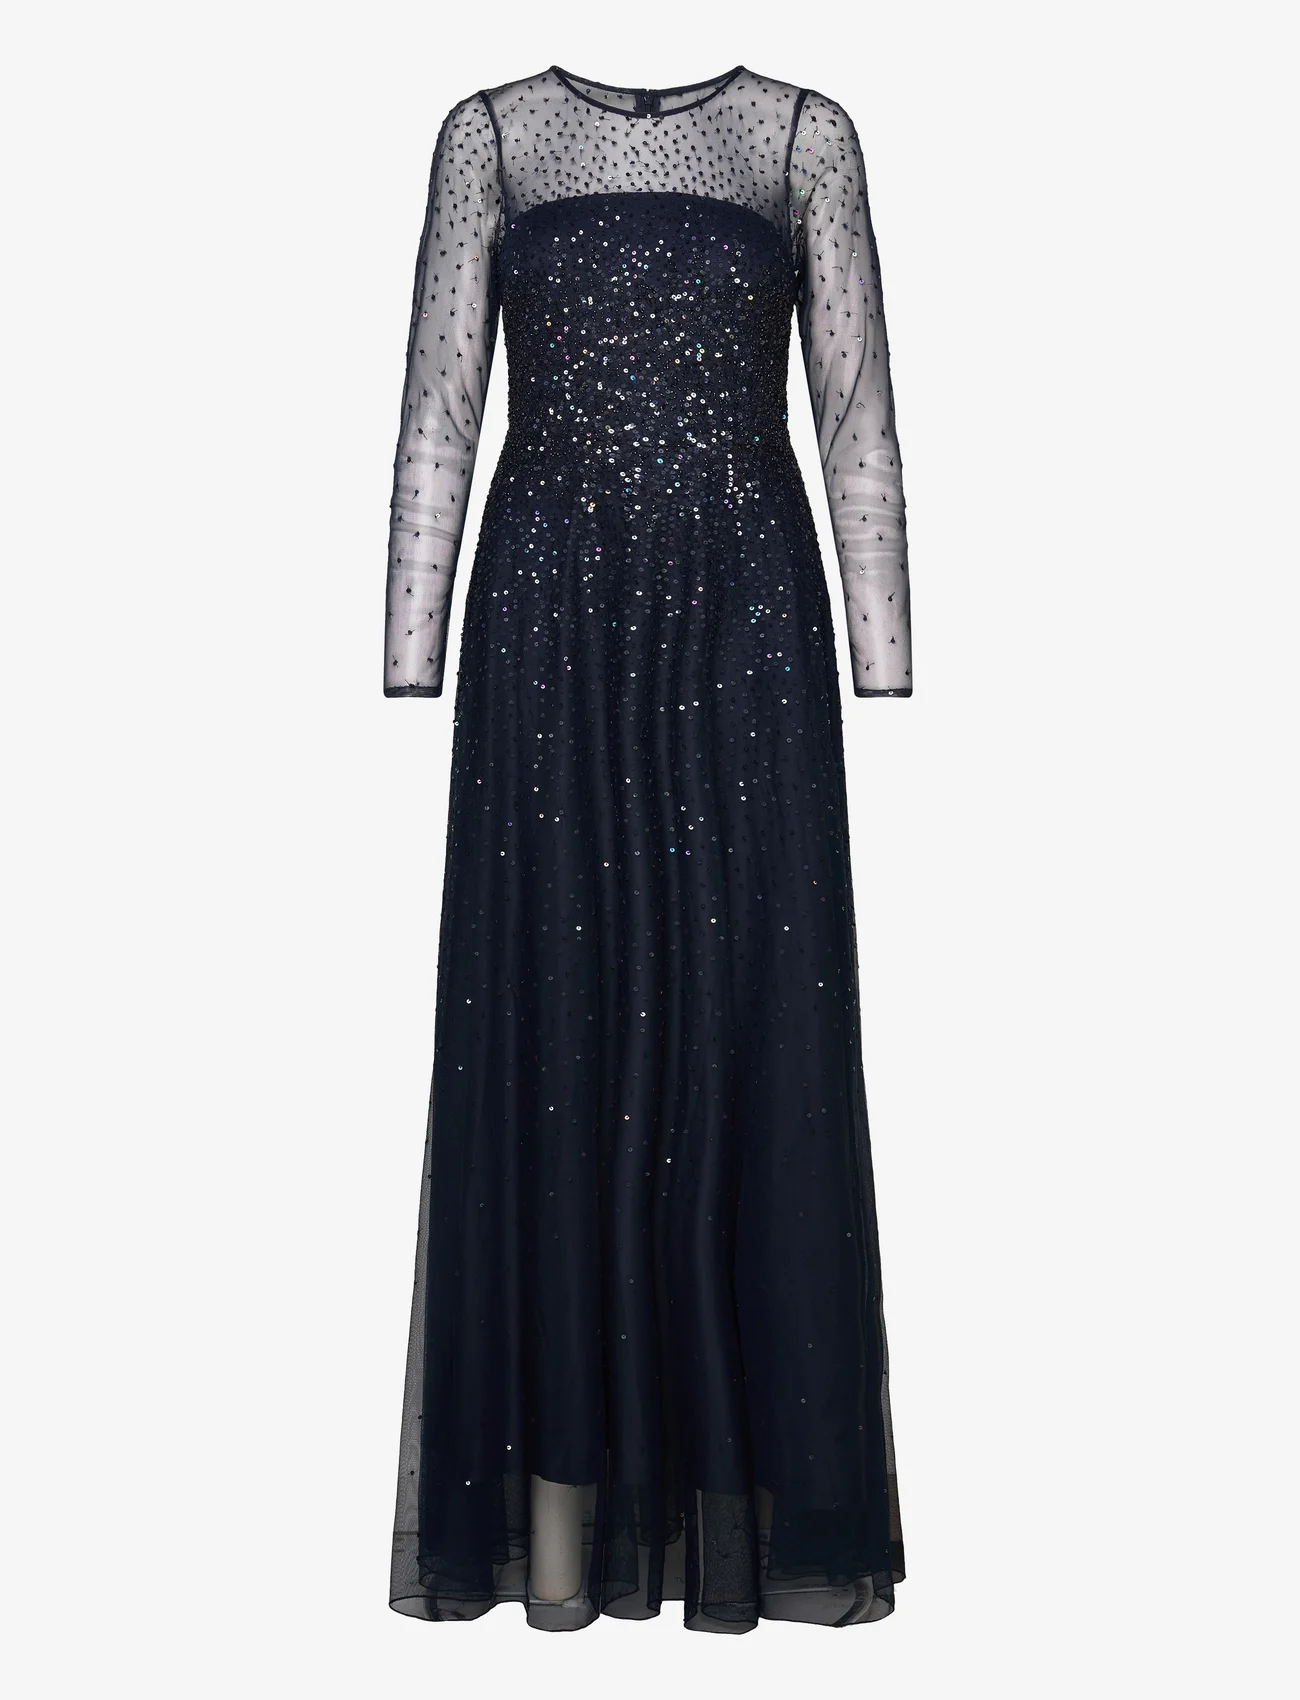 Andiata - Viviane 2 dress - vakarėlių drabužiai išparduotuvių kainomis - deep navy blue - 0